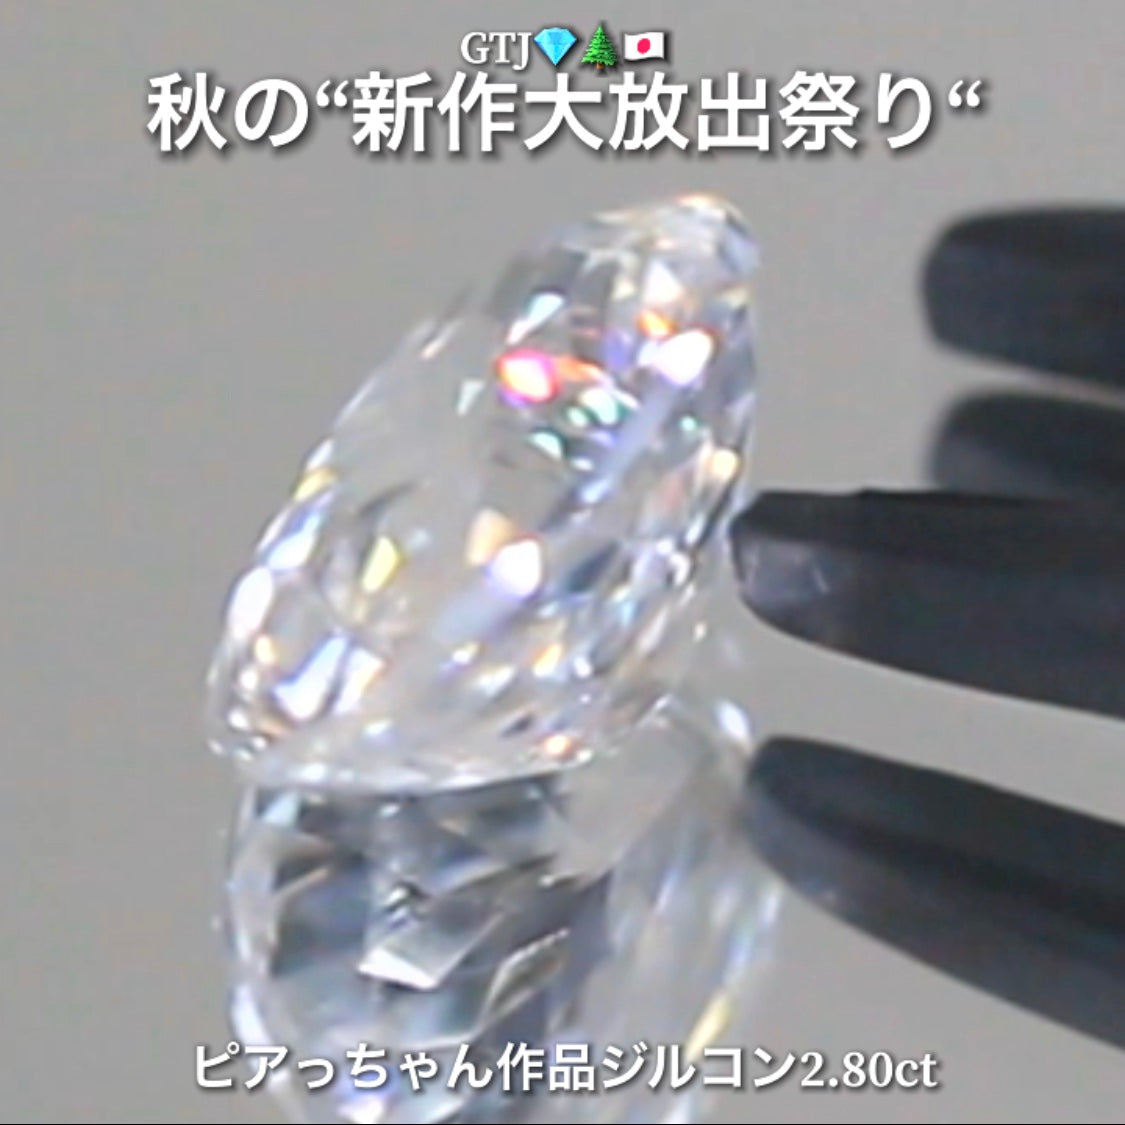 品質重視』カラーダイヤモンド、1.0カラットのモルサンストーン